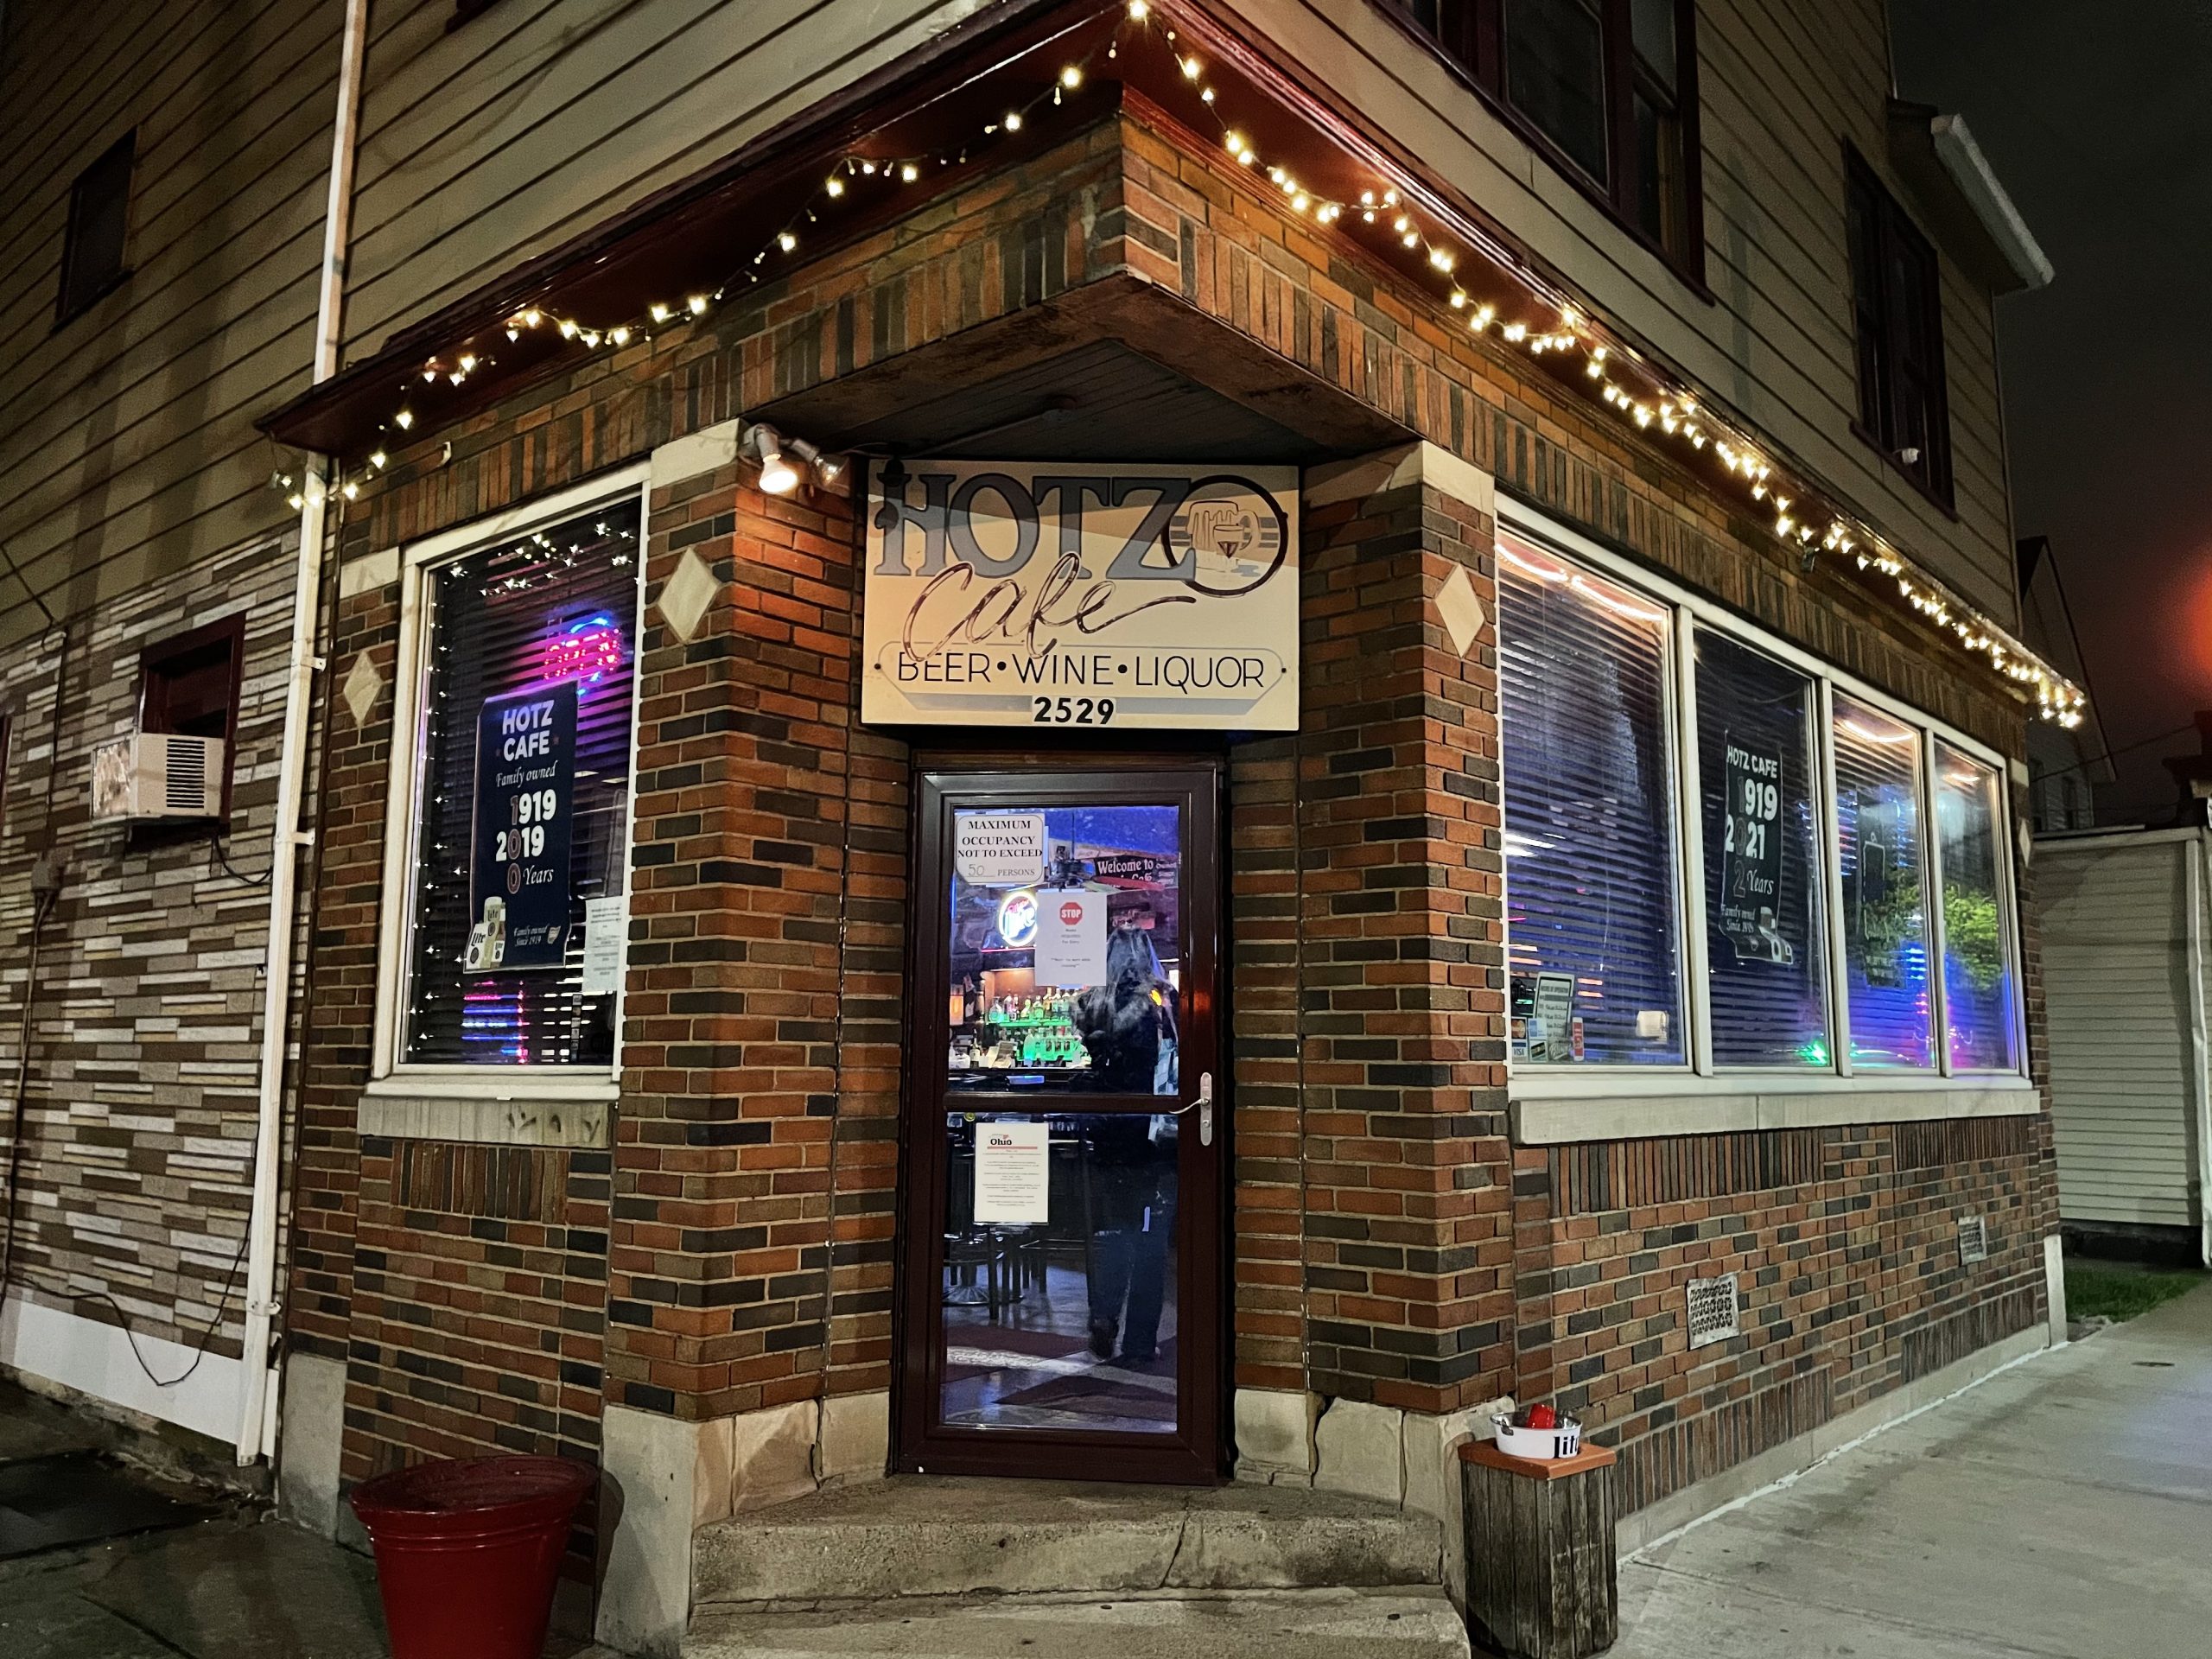 Hotz Cafe - Cleveland Dive Bar - Outside